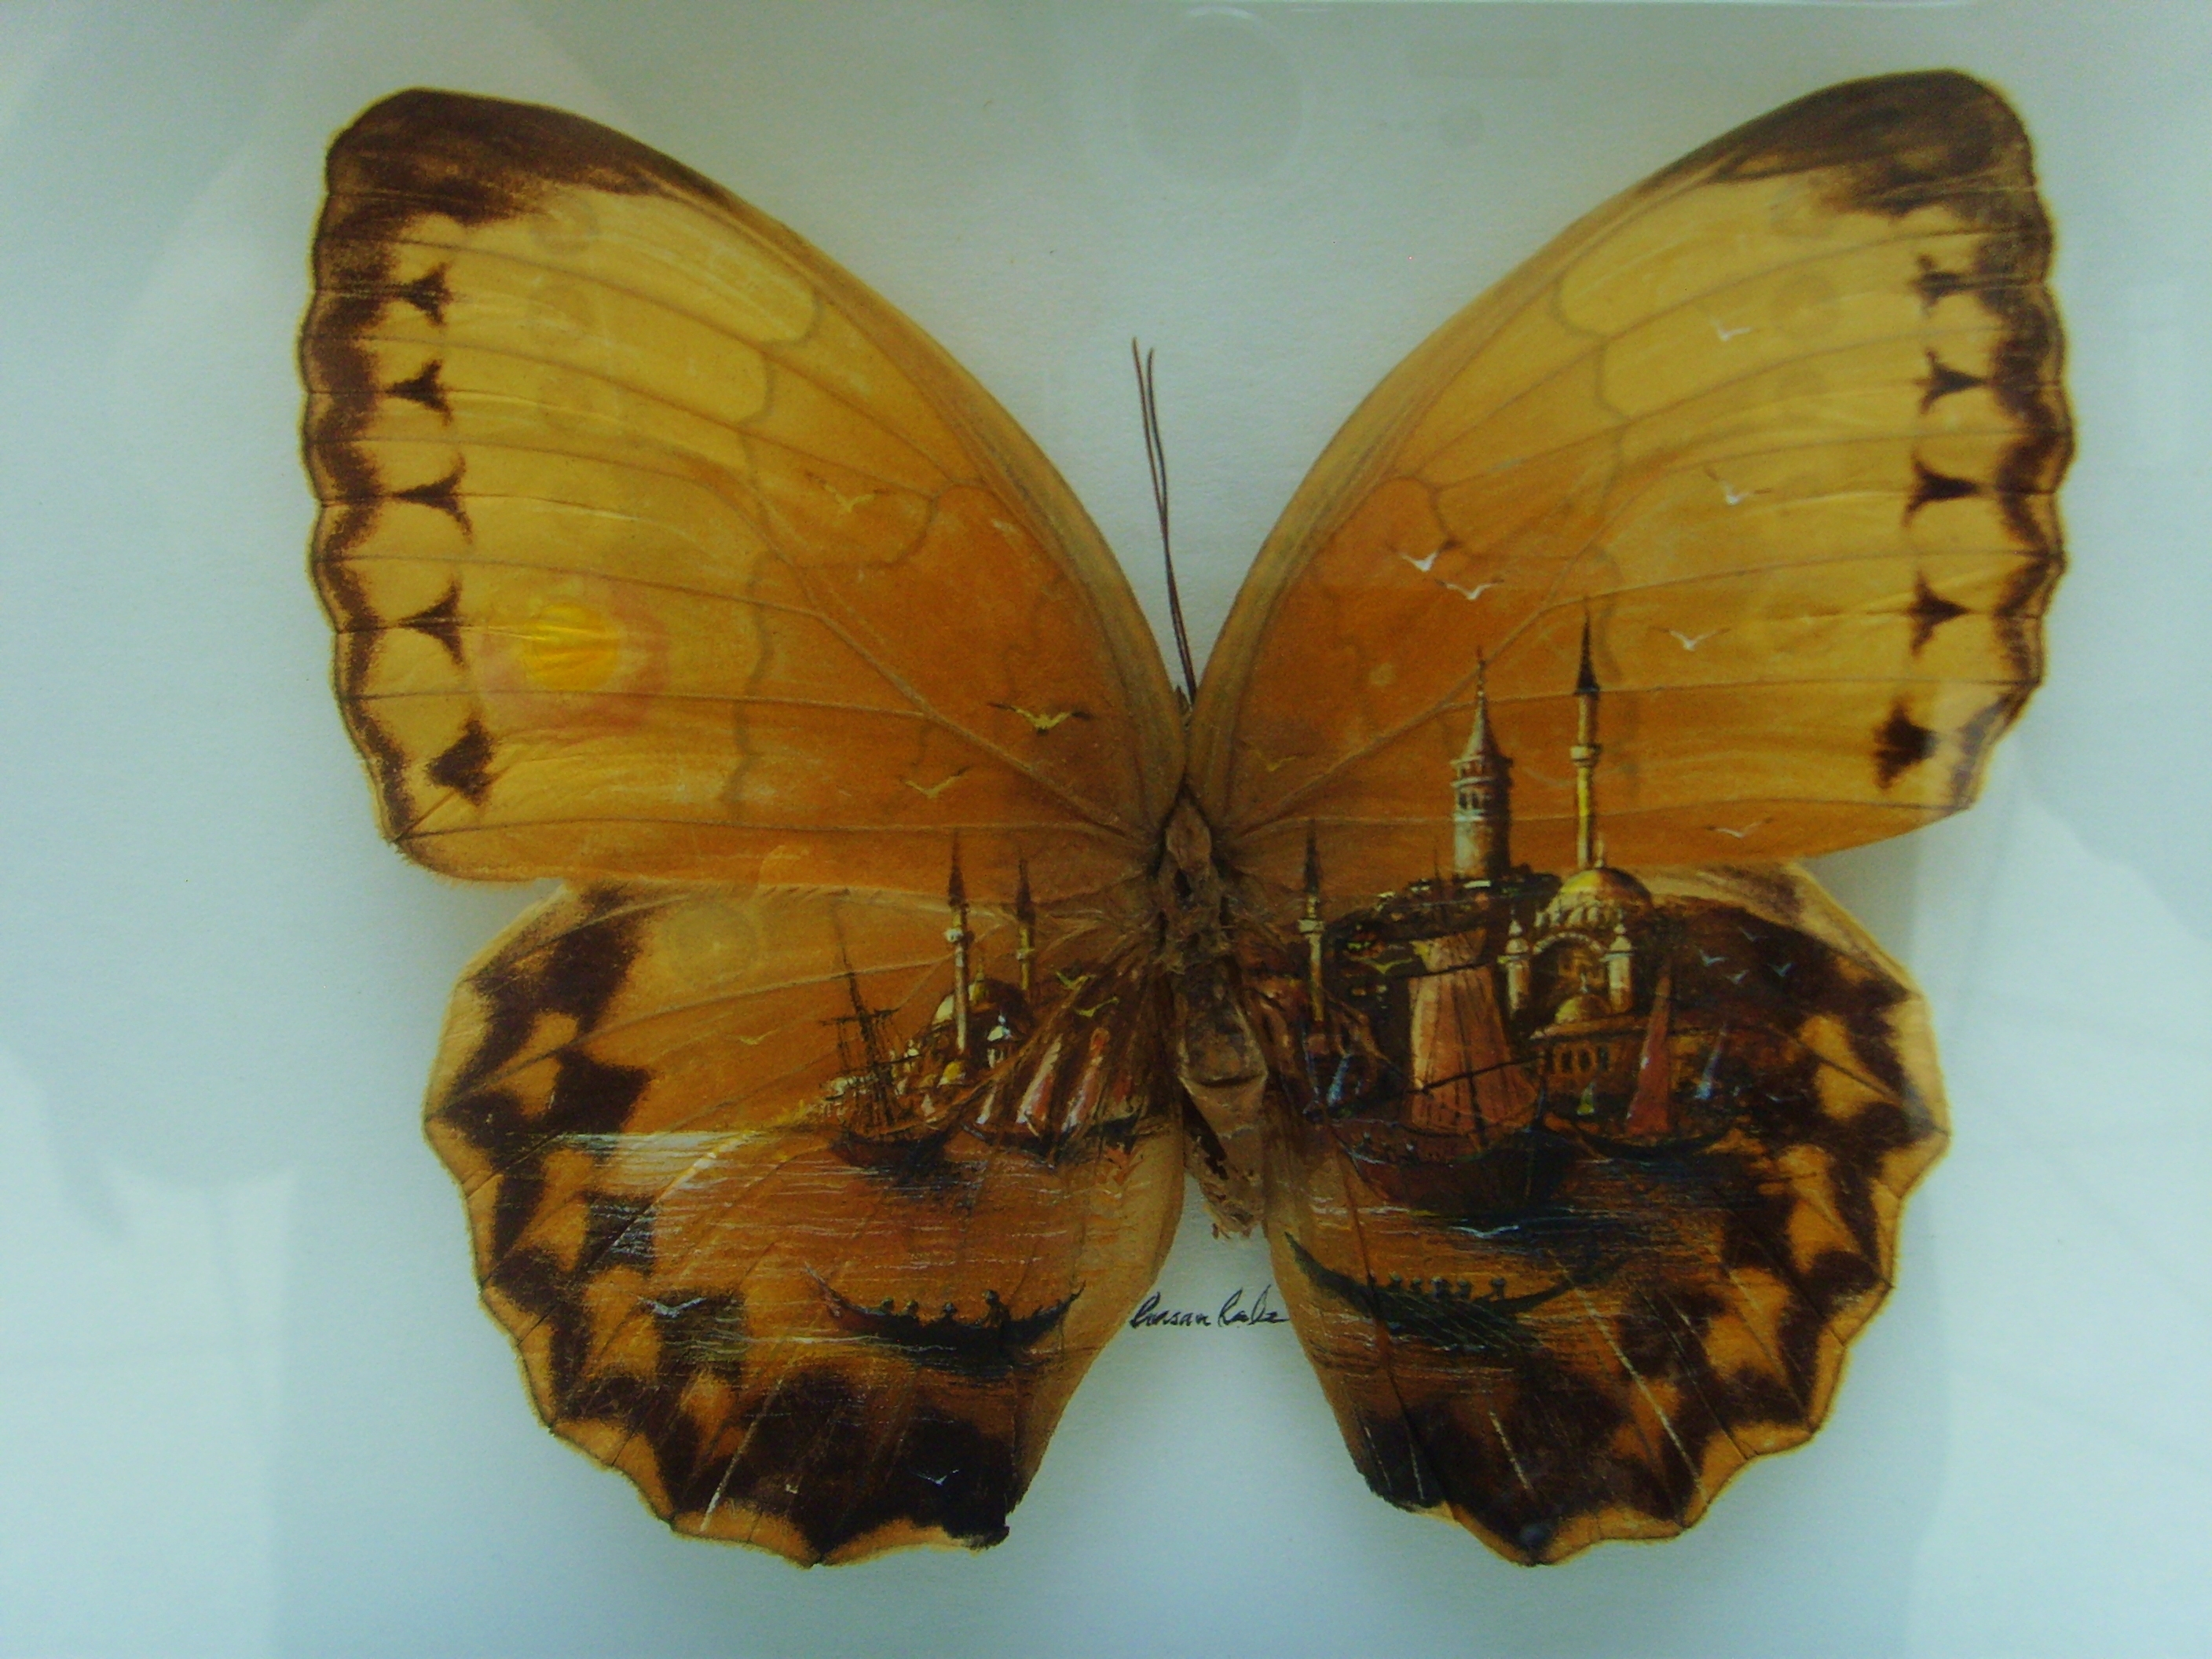 kelebek kanatlarinda istanbul ankara bir avm resim sergisinden resmi yapan sanatciya saygilarimla 04 nisan 2013 by adem akdogan sanatcilar kelebekler resim